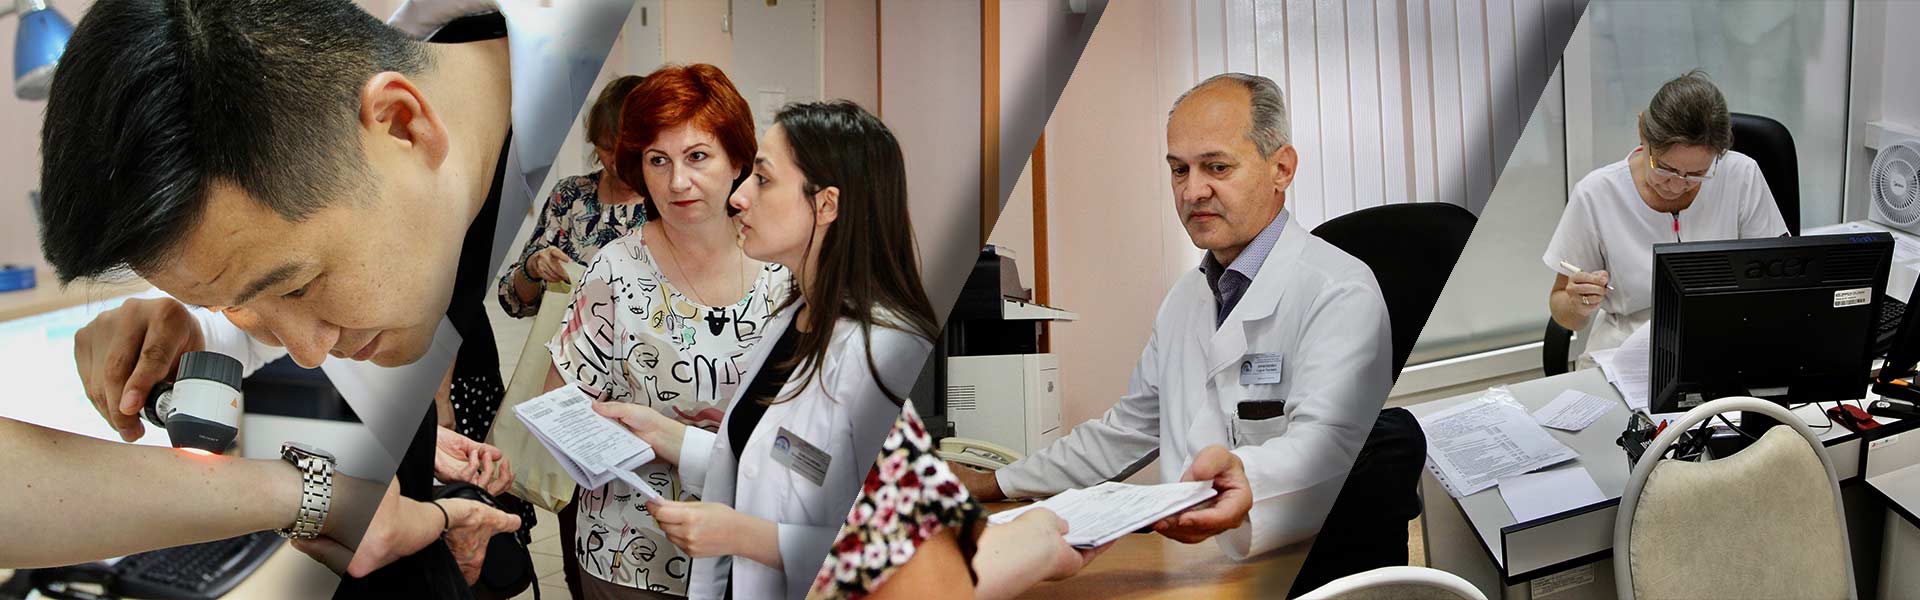 «Онкопатруль» как новый бренд в Российском Здравоохранении